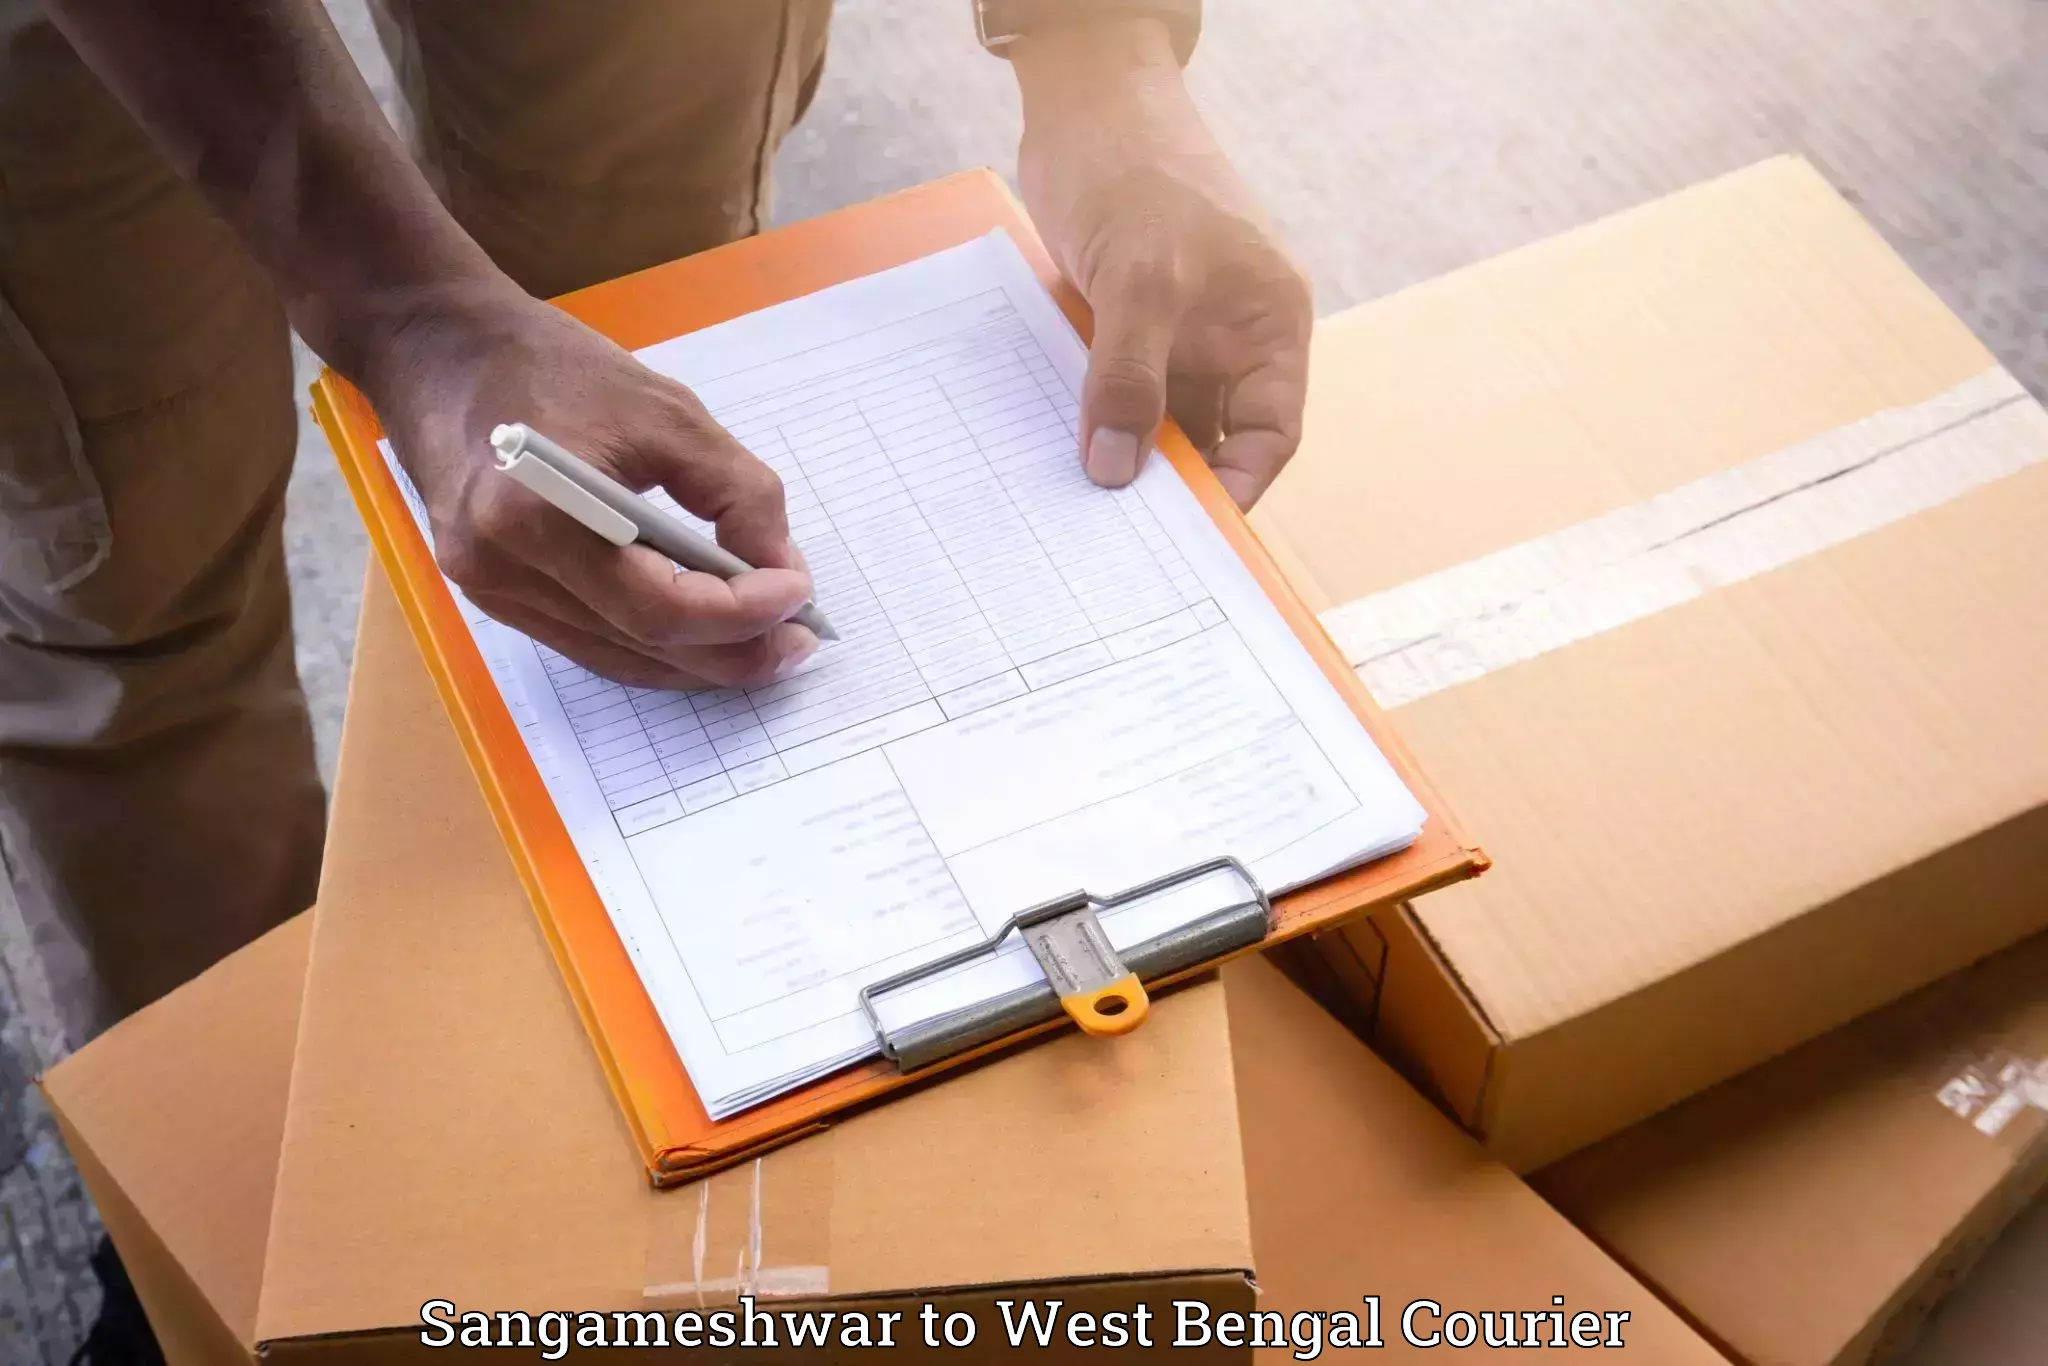 Furniture moving assistance Sangameshwar to Kalijhora